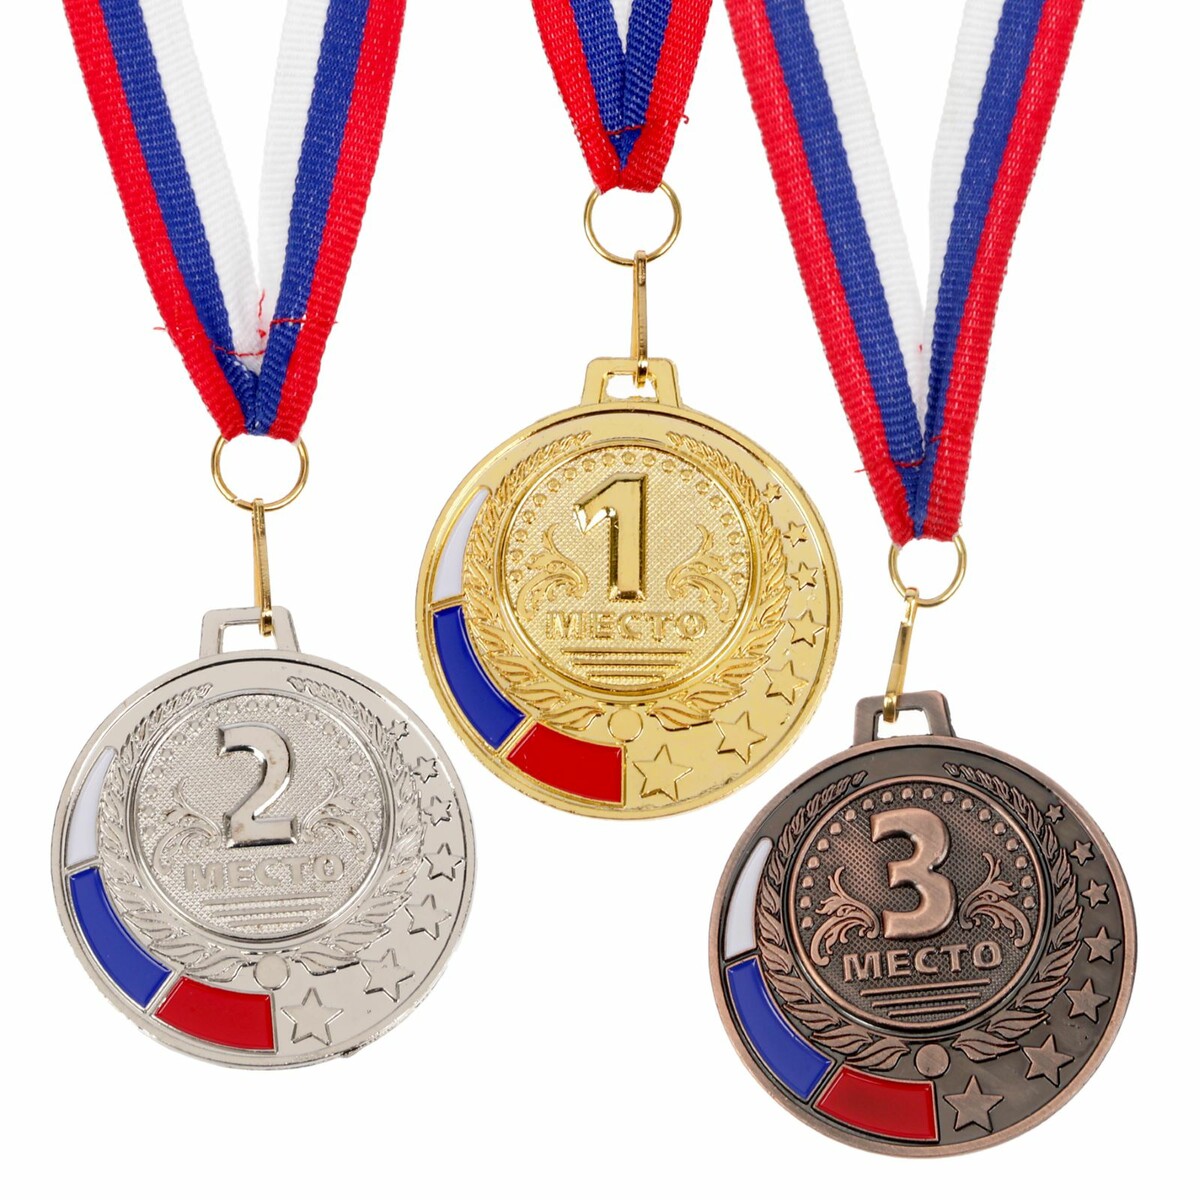 Медаль призовая 062 диам 5 см. 3 место, триколор. цвет бронз. с лентой медаль призовая 193 диам 3 5 см 3 место триколор бронз без ленты